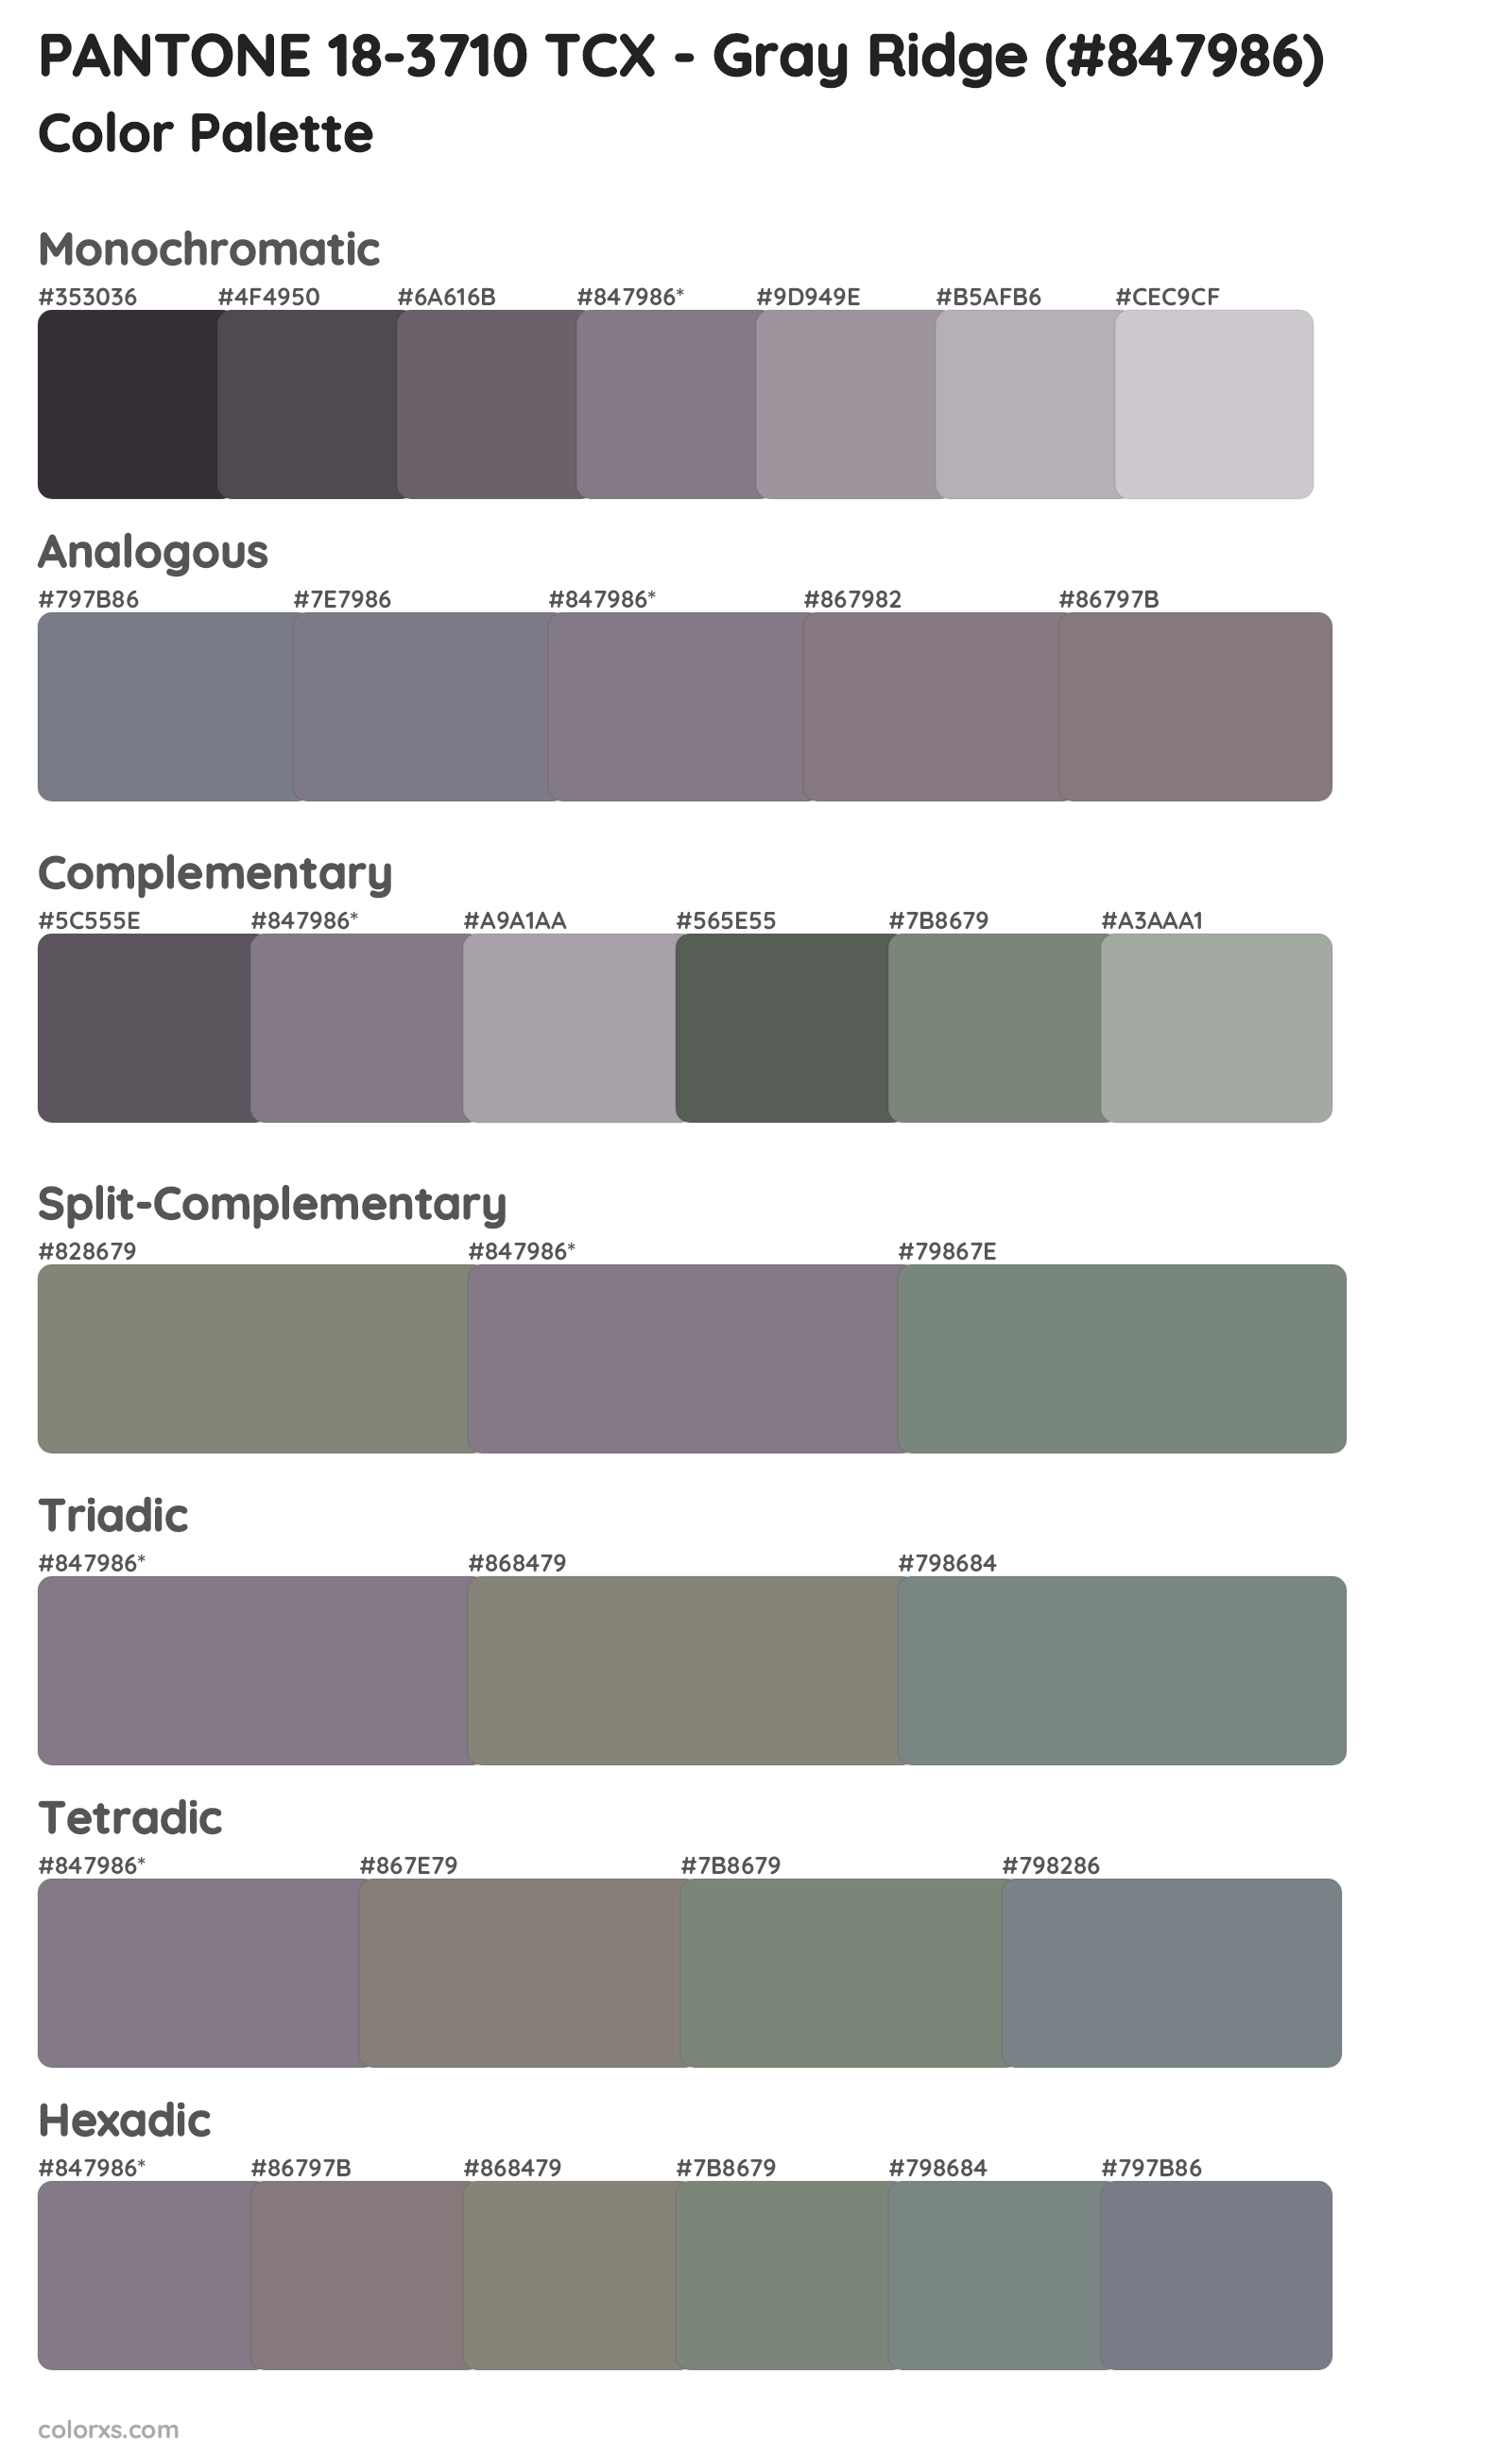 PANTONE 18-3710 TCX - Gray Ridge Color Scheme Palettes